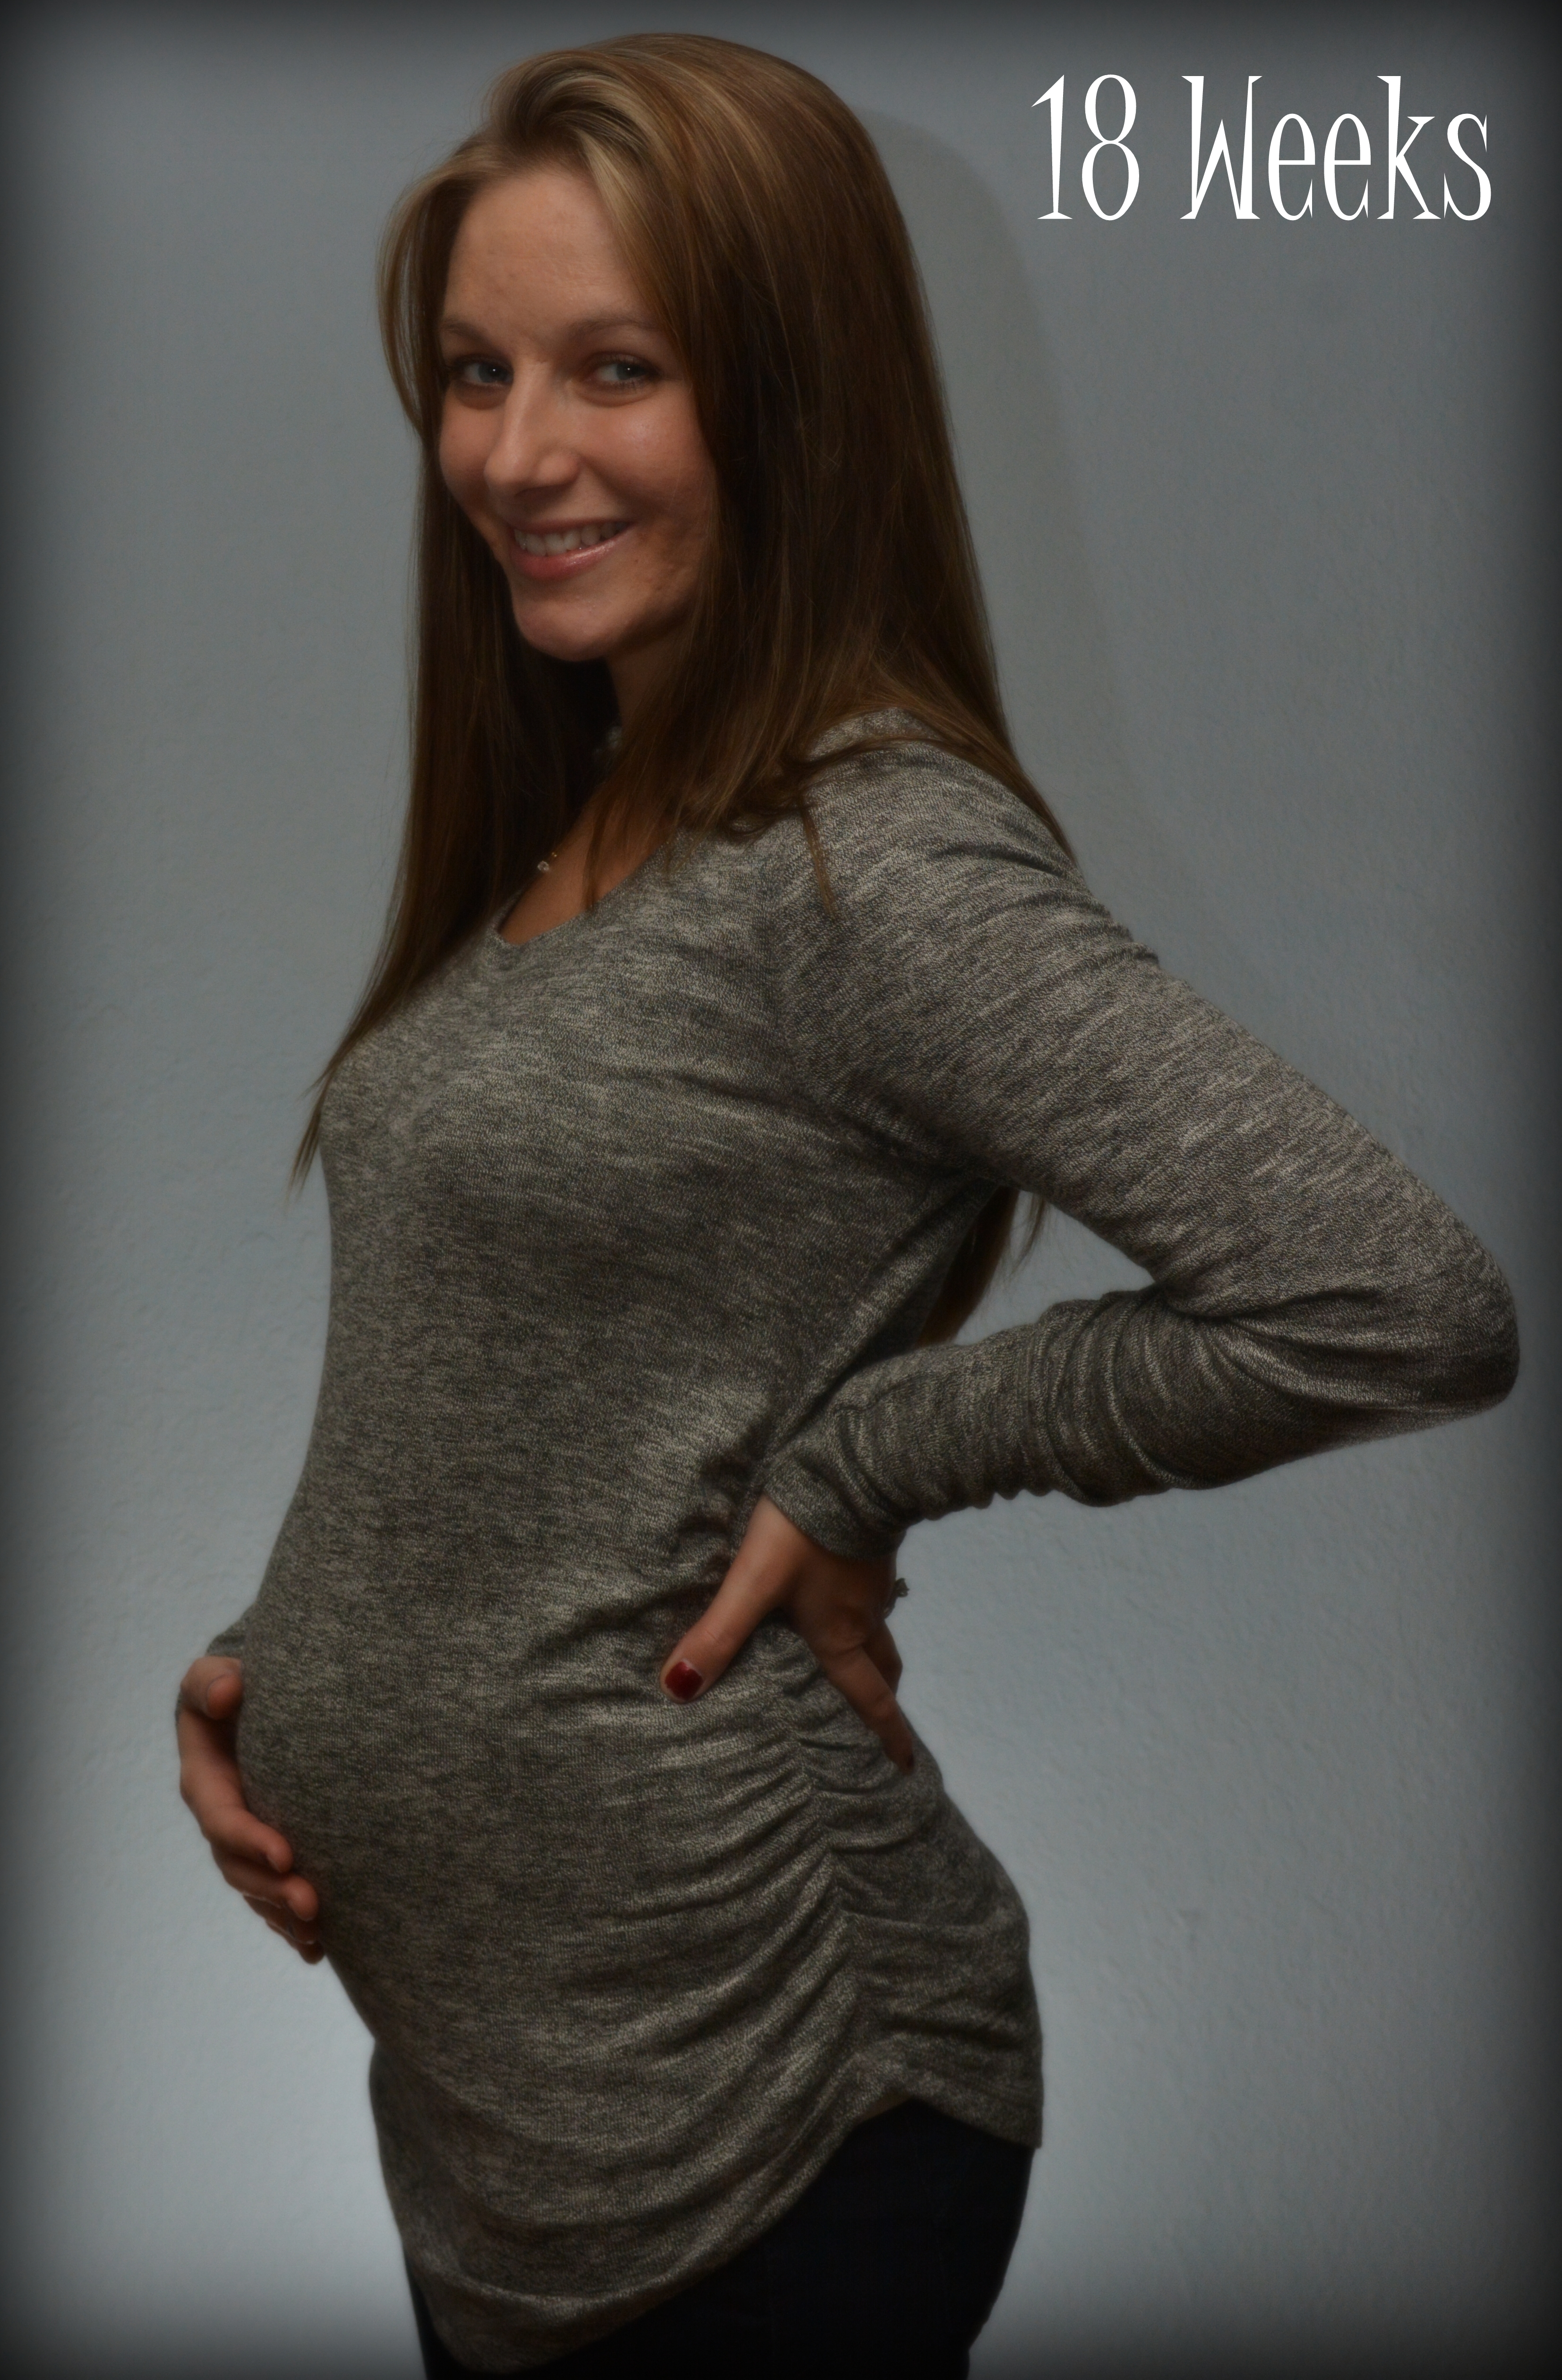 18 Weeks Pregnant 2